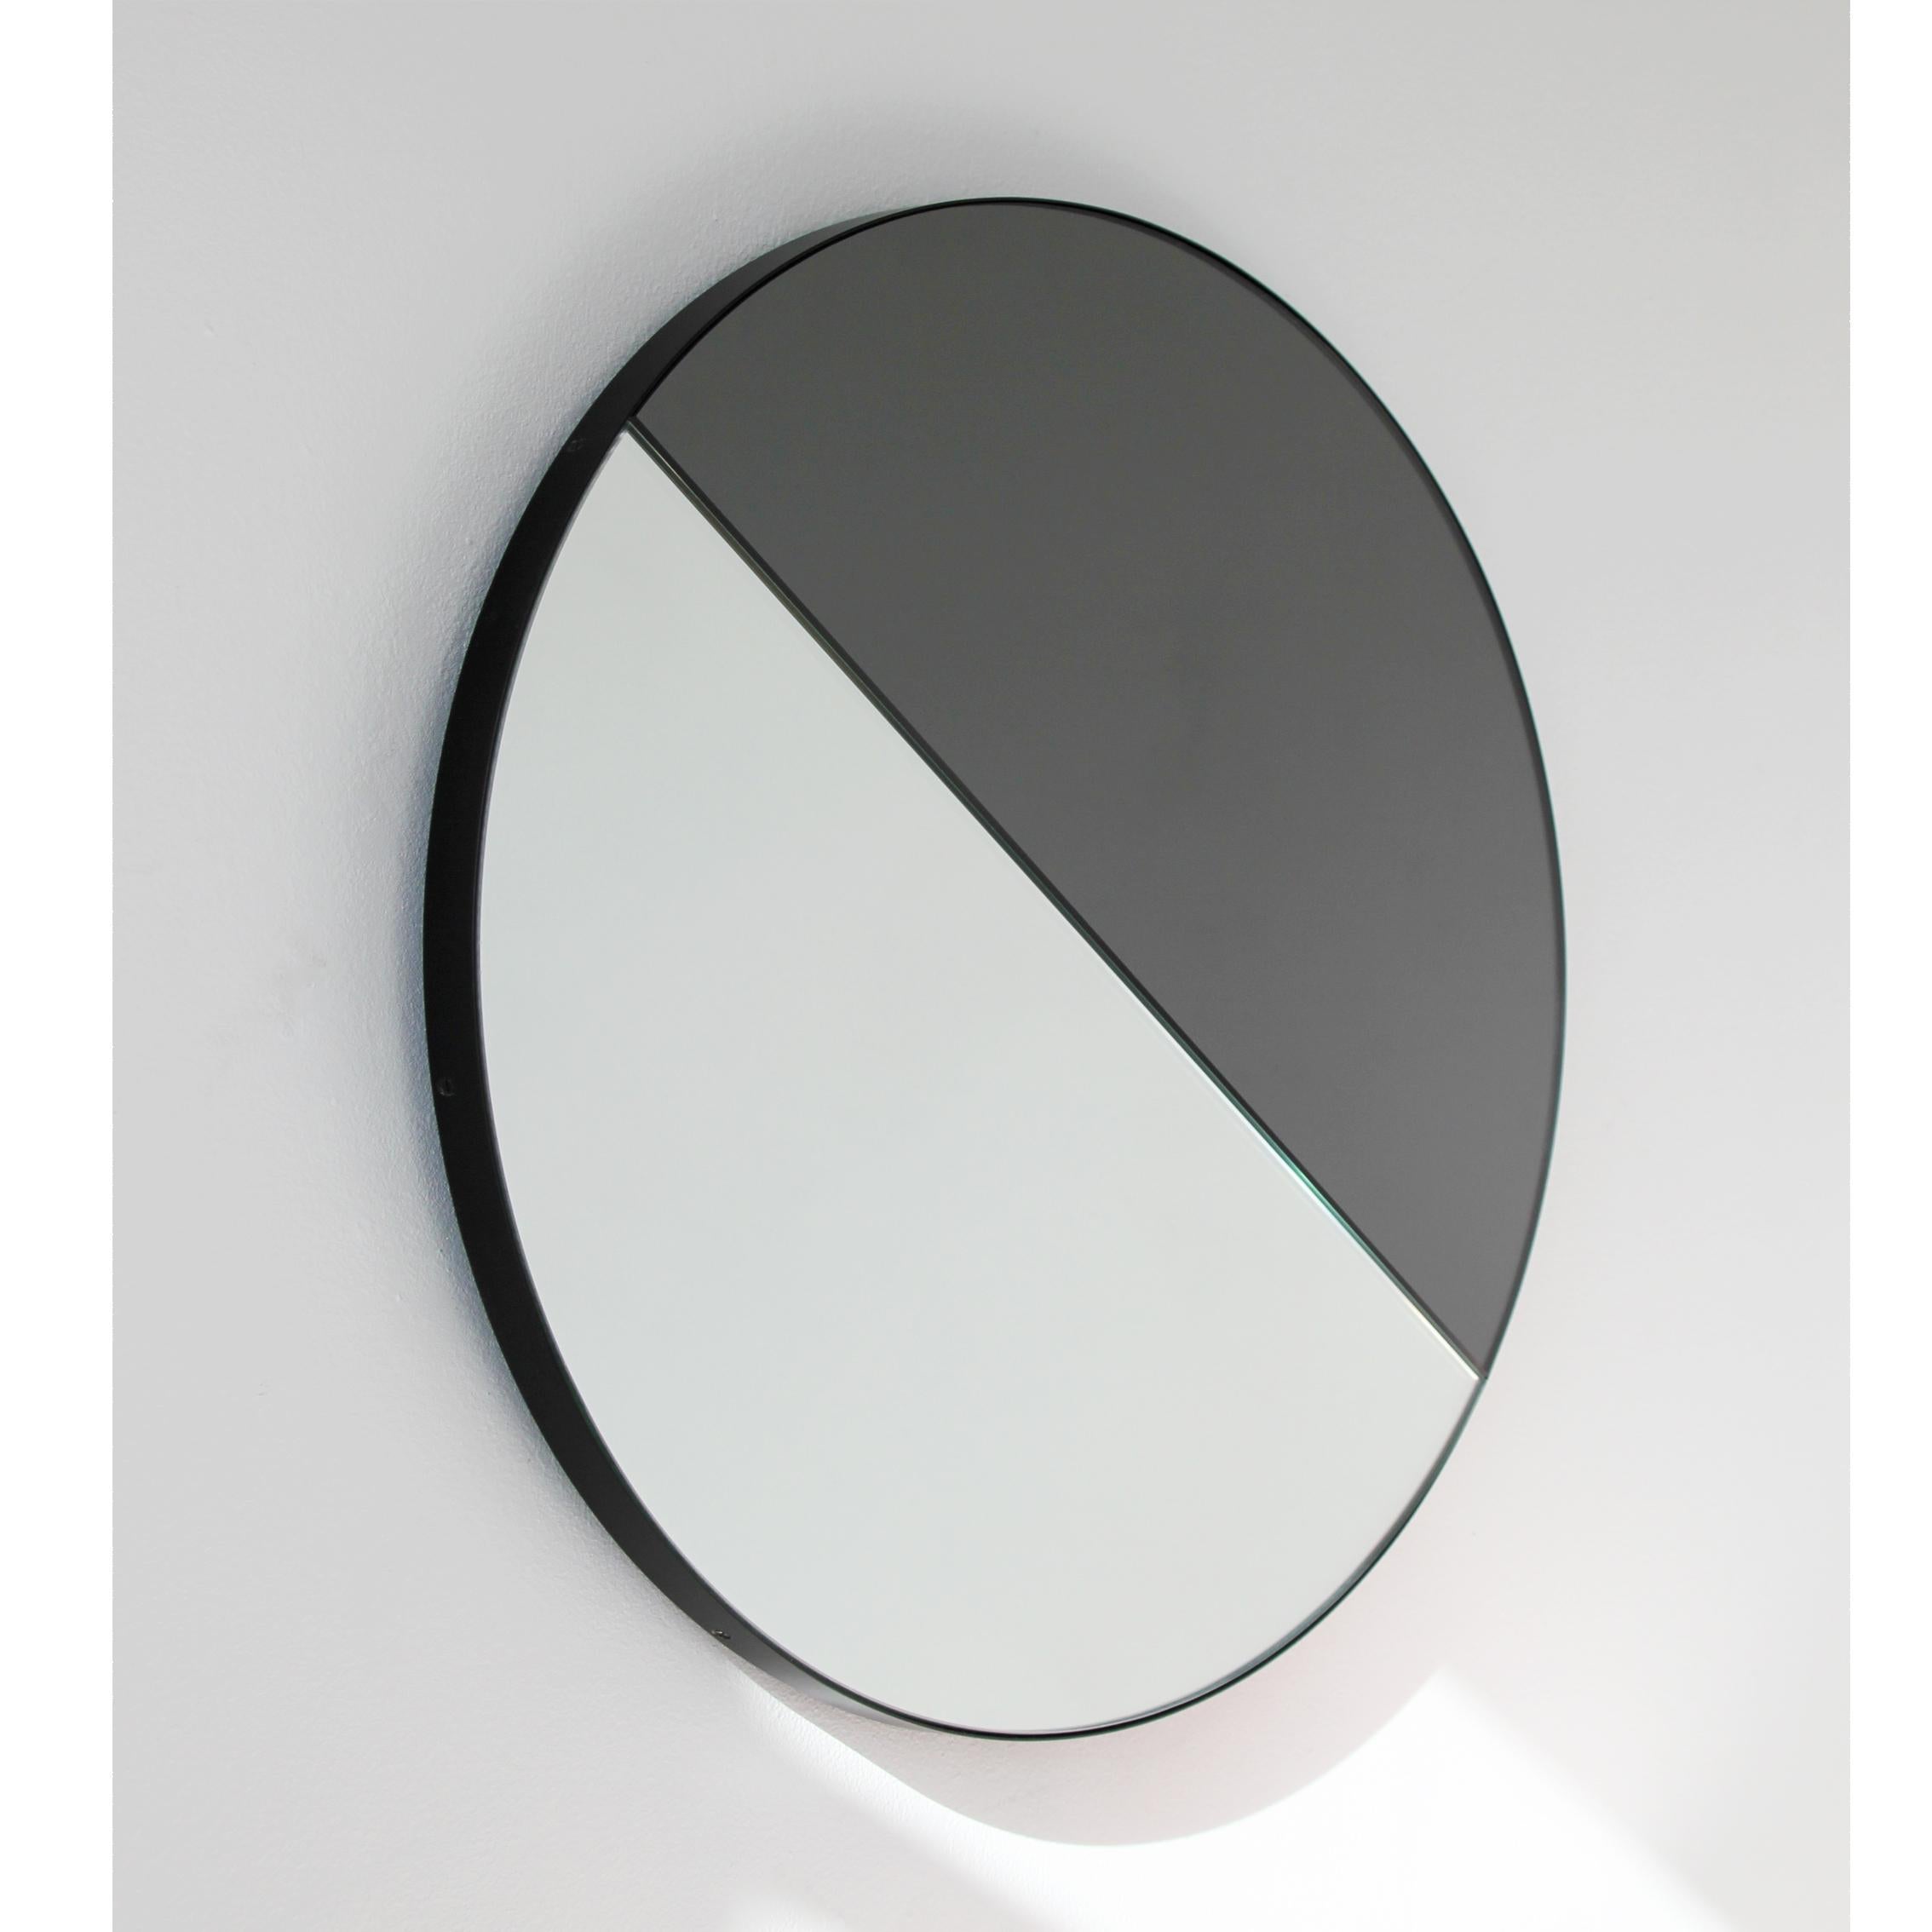 Miroir rond contemporain teinté mixte (noir et argent) avec un cadre noir élégant. Conçu et fabriqué à la main à Londres, au Royaume-Uni.

Tous les miroirs sont équipés d'un ingénieux système de tasseaux à la française (lattes fendues) qui leur